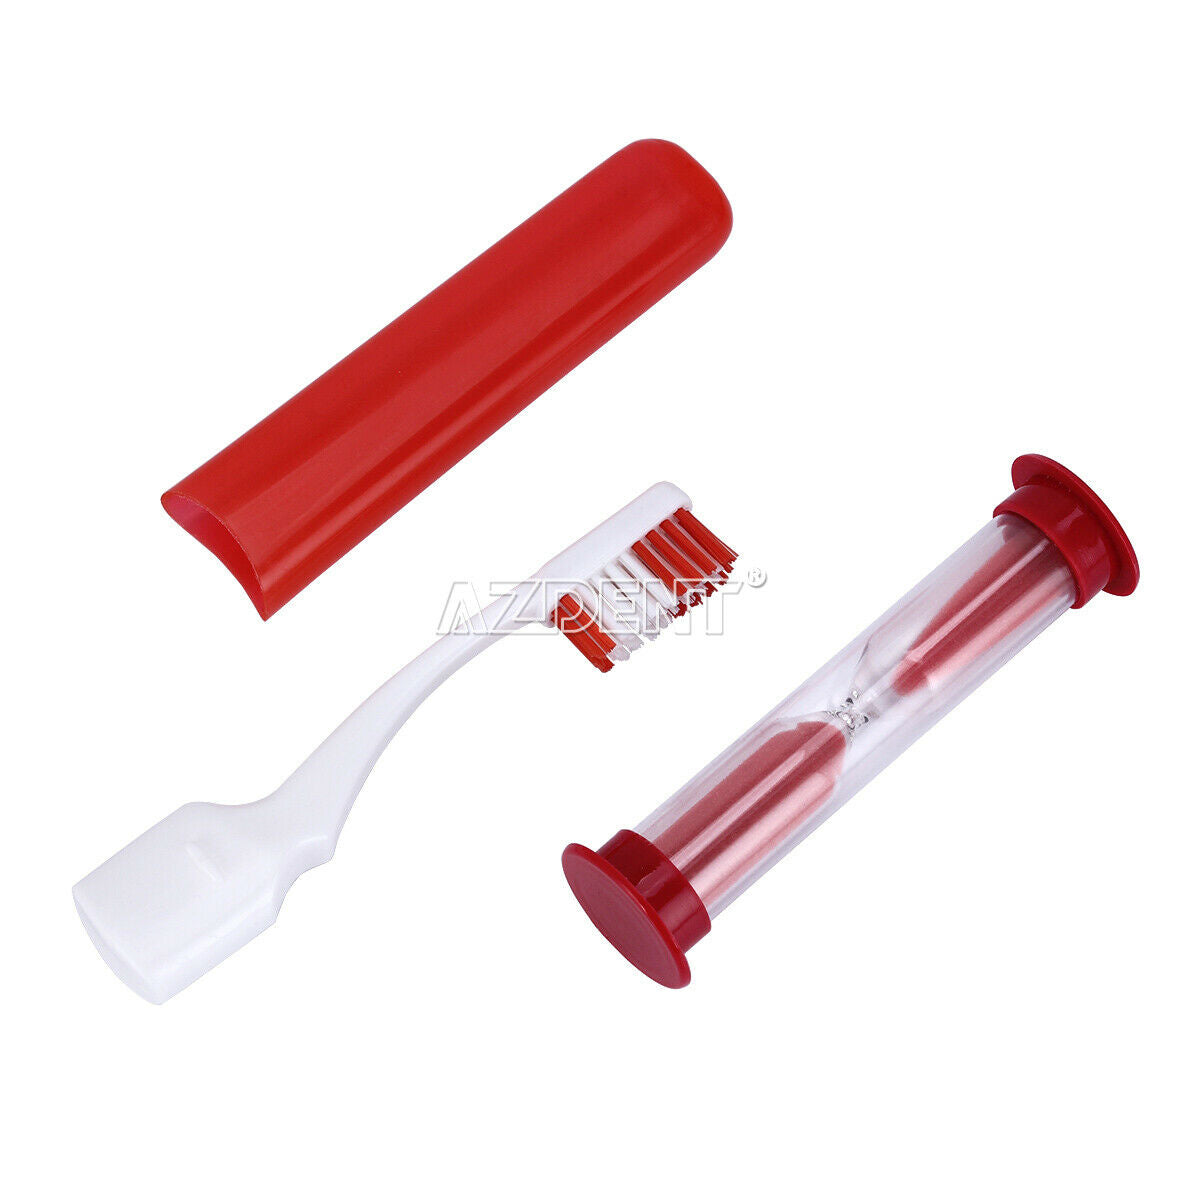 10X AZDENT Dental Orthodontic Brush Ties Toothbrush brush Floss Oral Care Kit